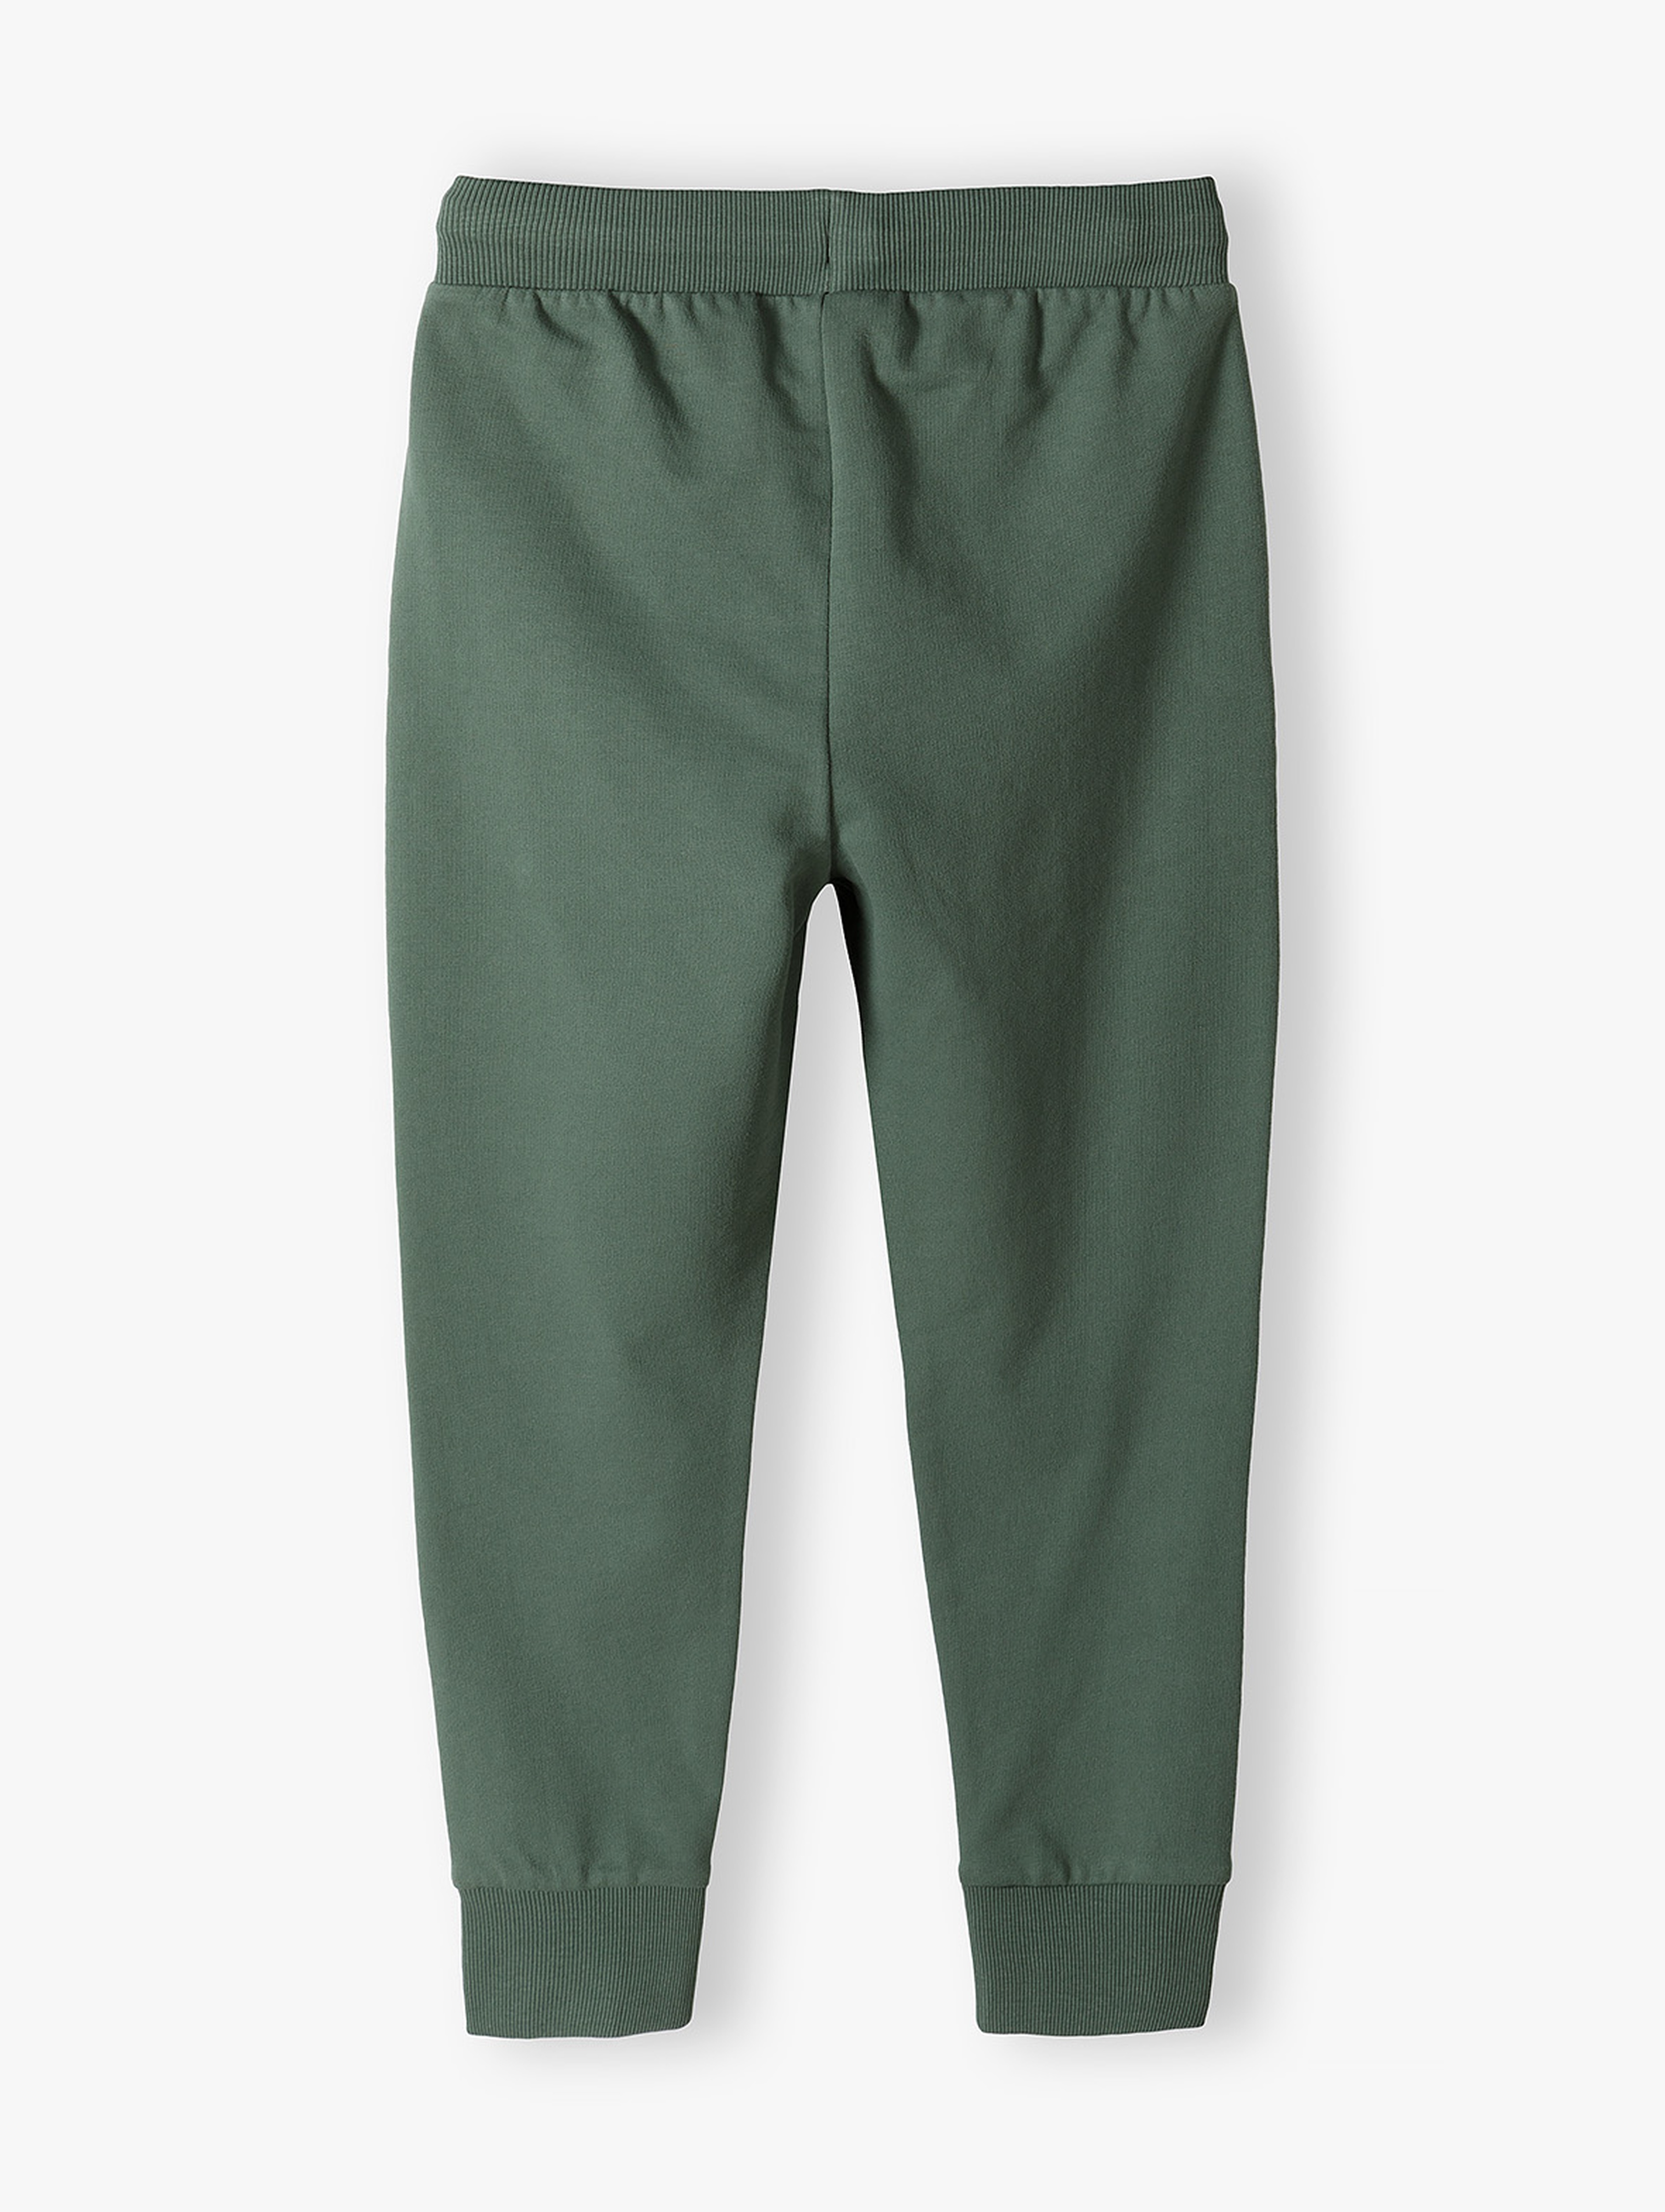 Zielone spodnie dresowe chłopięce - slim